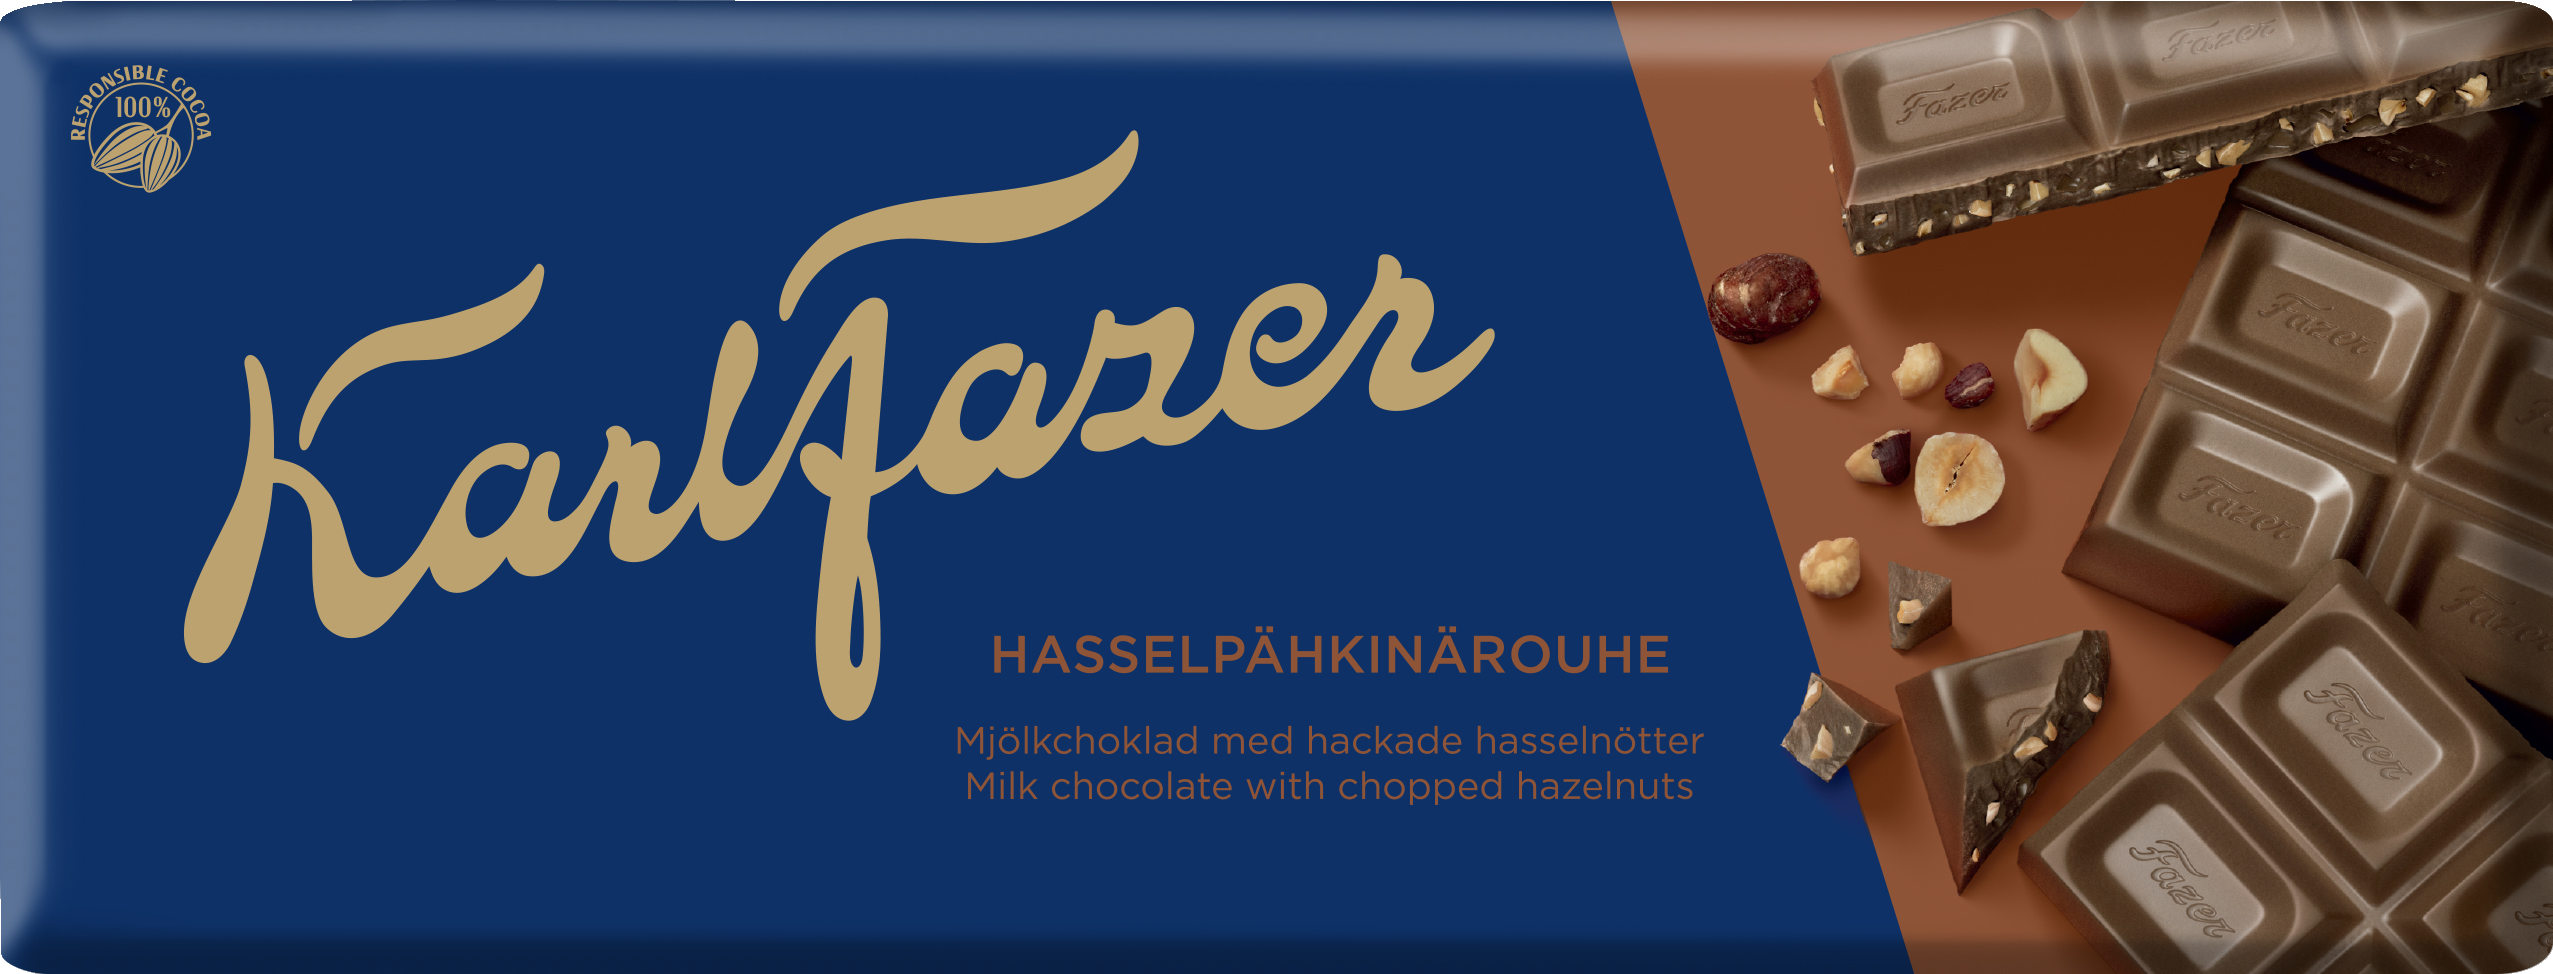 Karl Fazer suklaalevy 180g hasselpähkinä rouhe